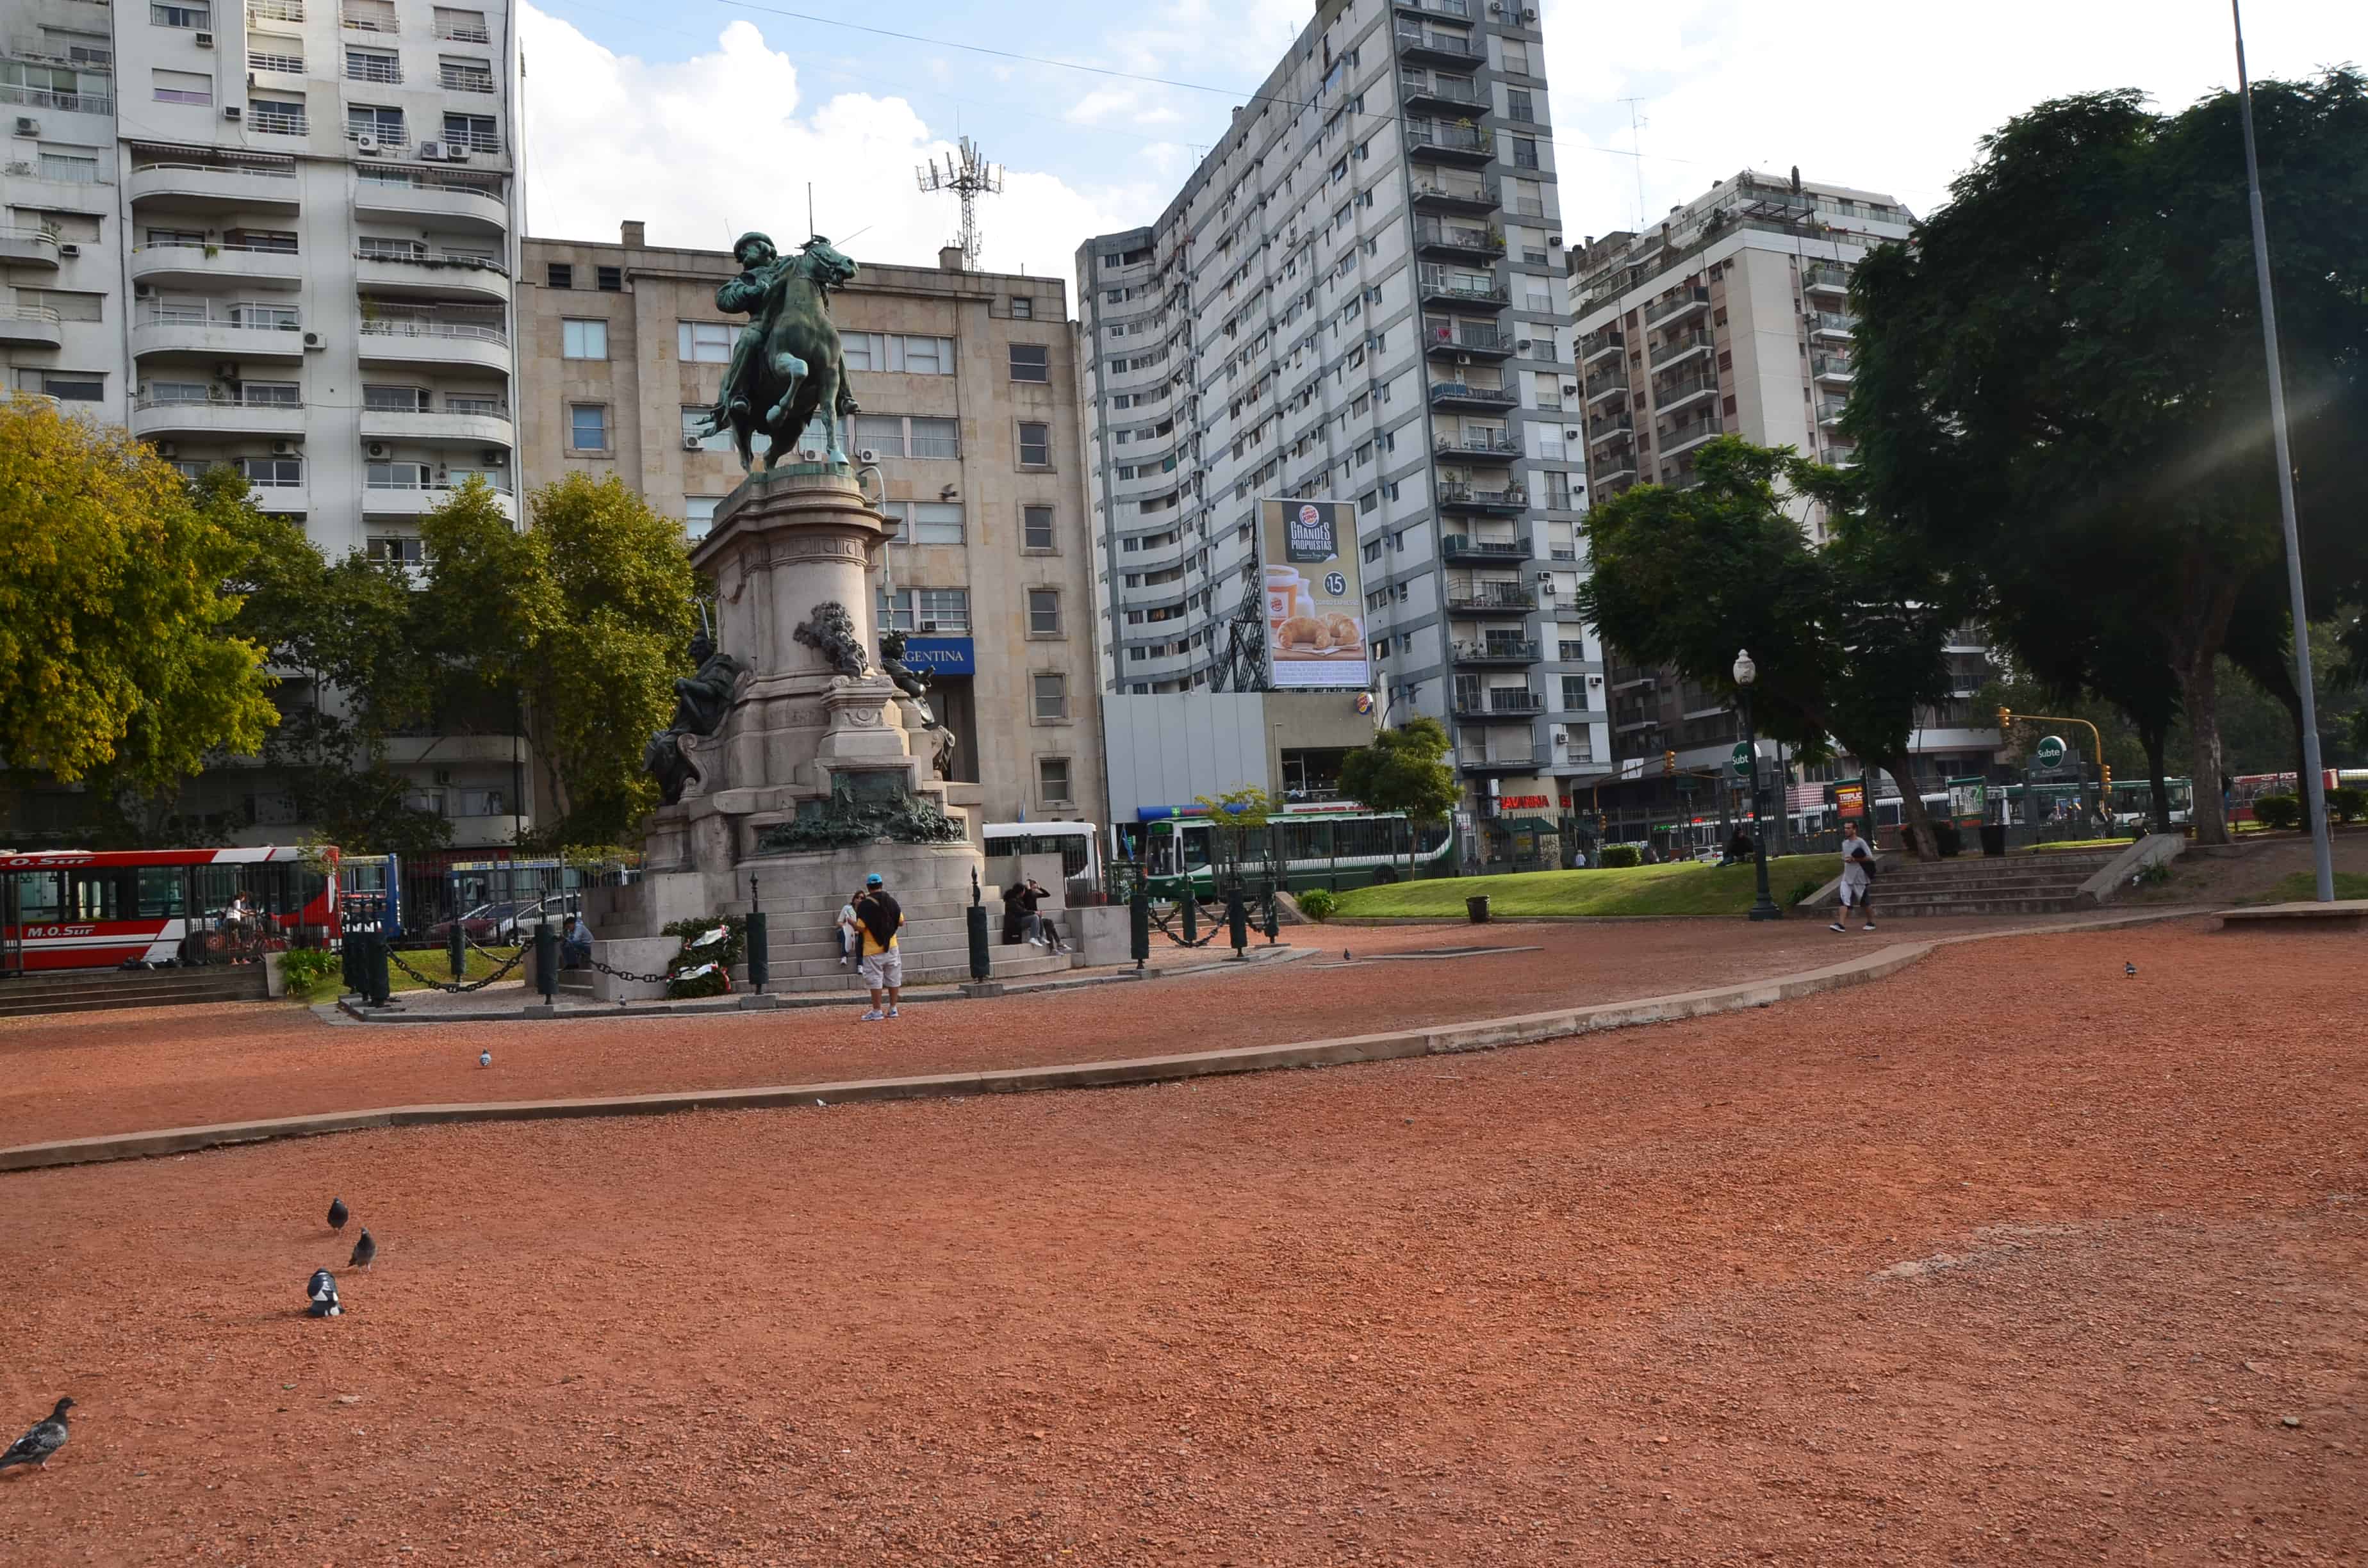 Plaza Italia in Palermo, Buenos Aires, Argentina